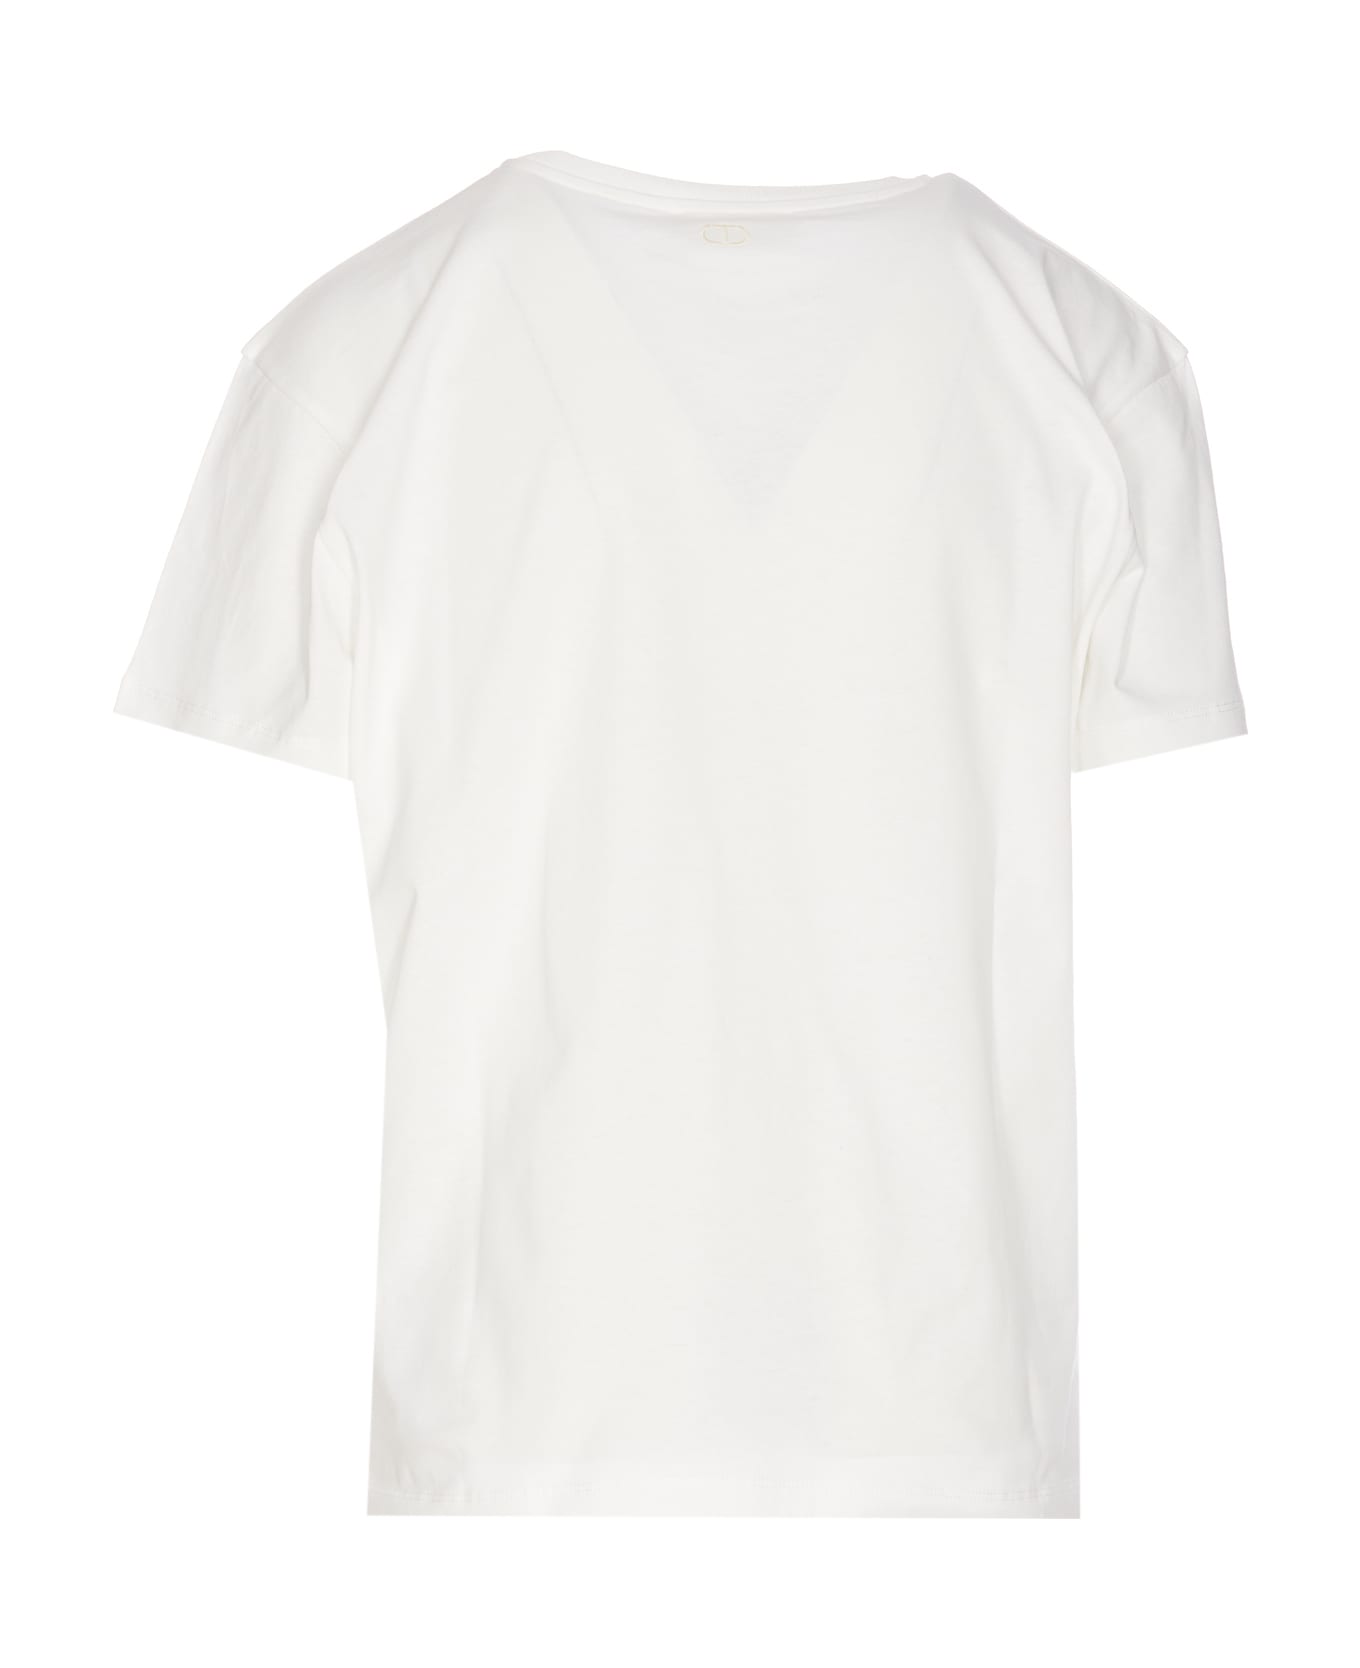 TwinSet T-shirt - White